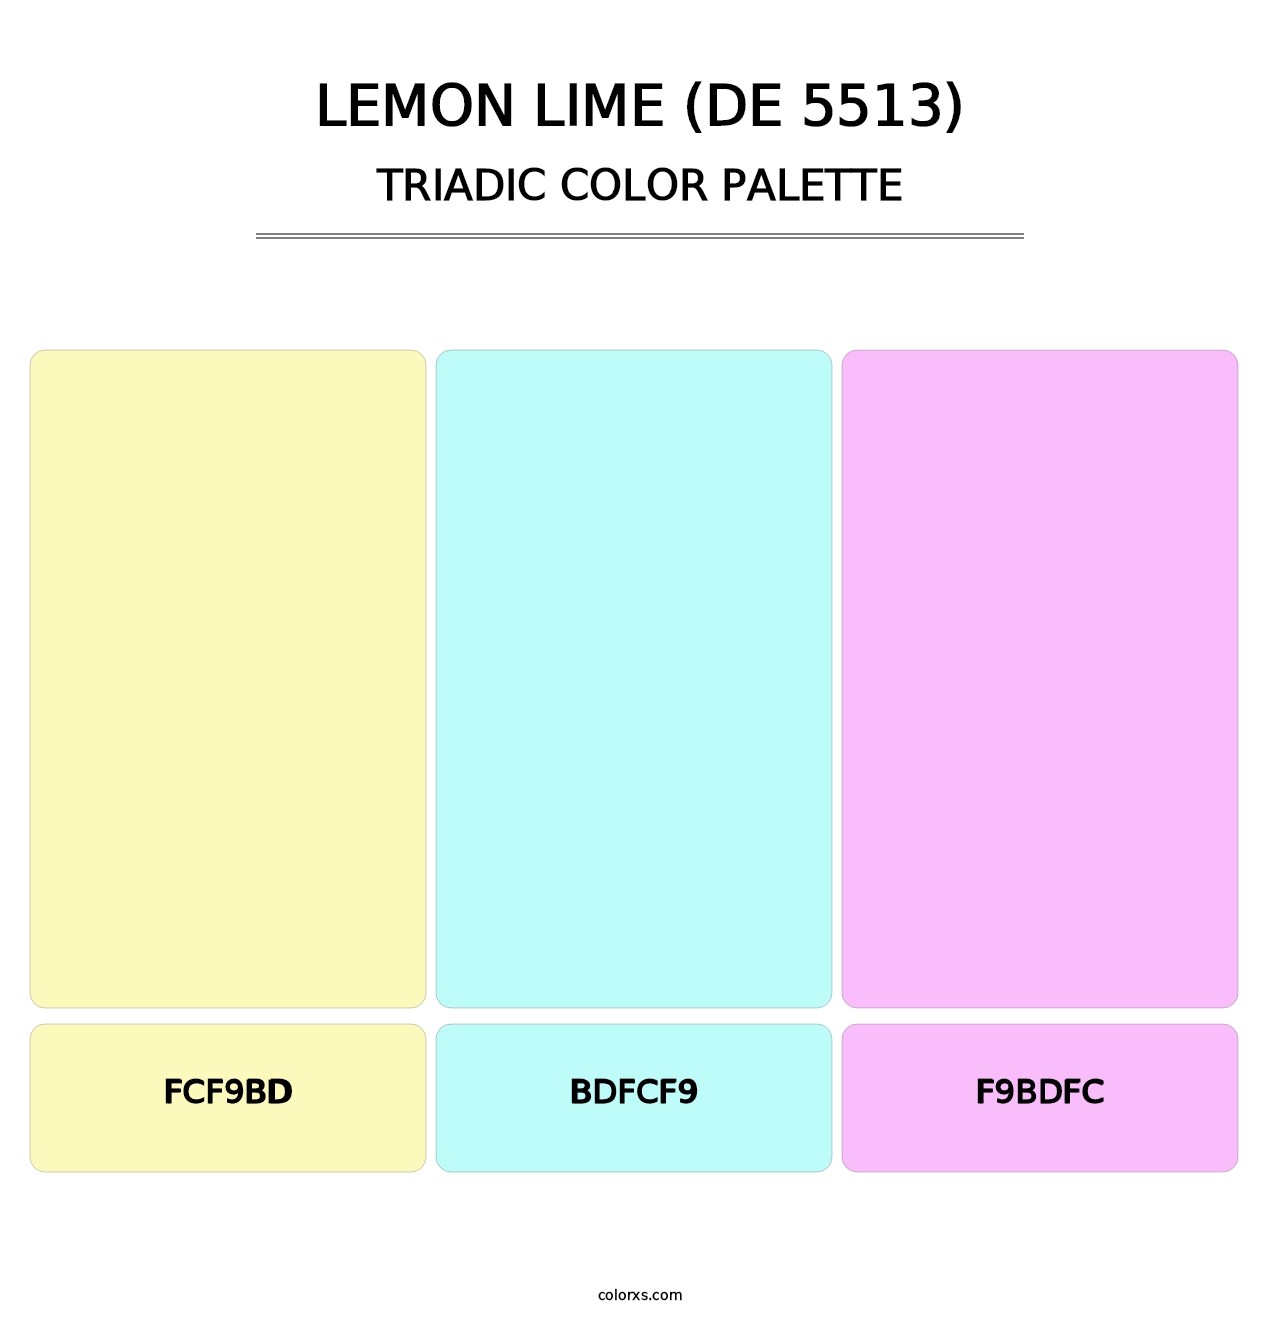 Lemon Lime (DE 5513) - Triadic Color Palette